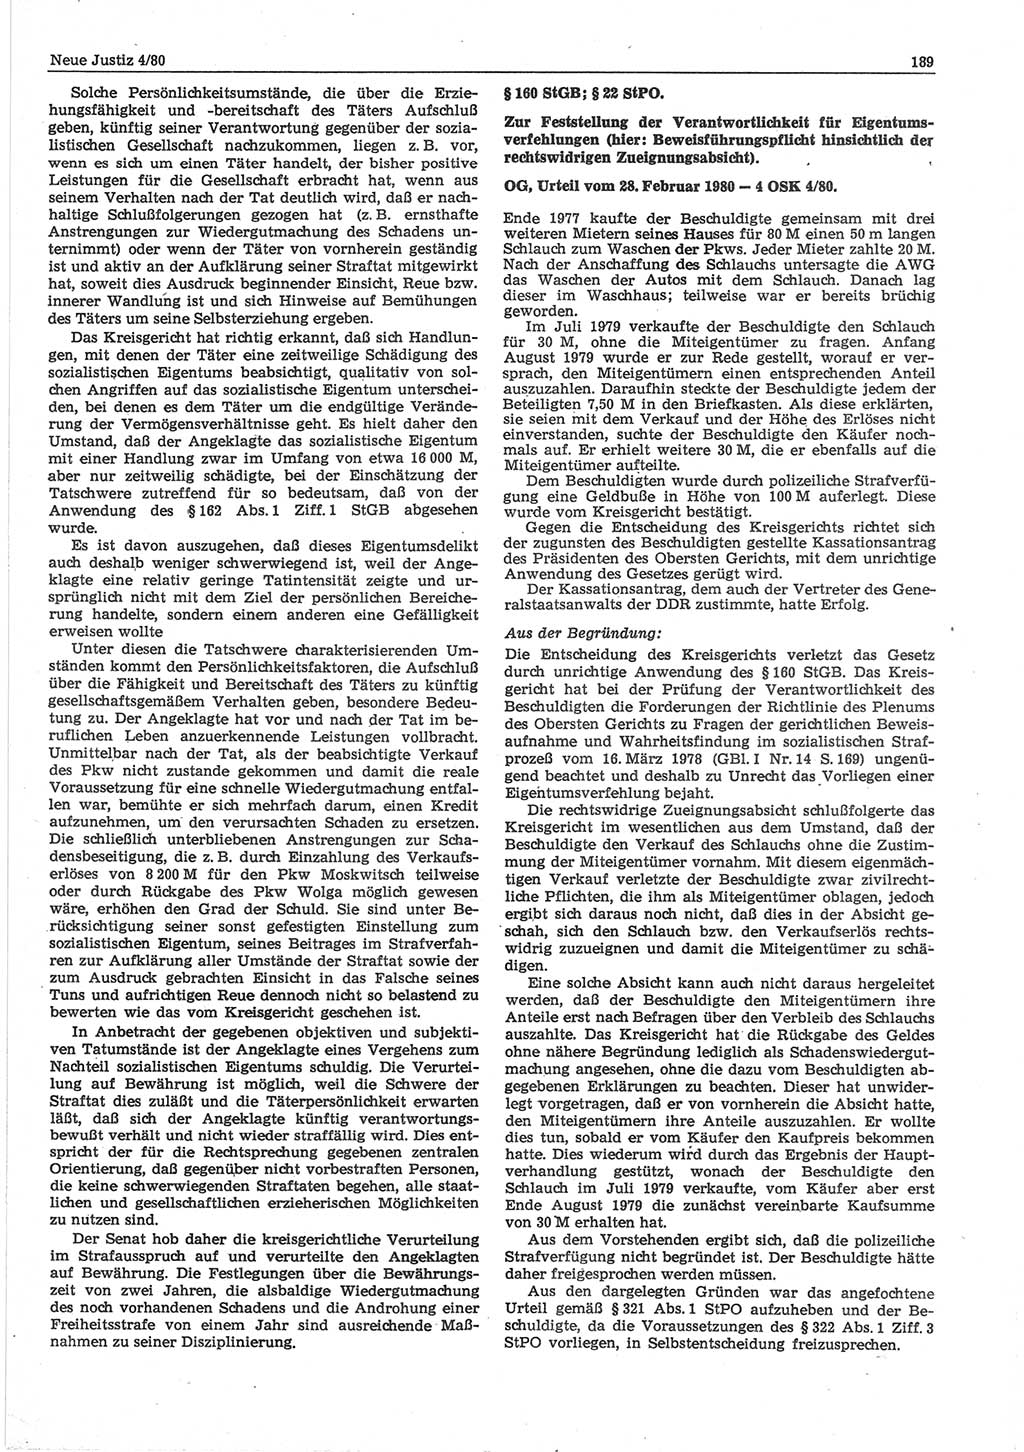 Neue Justiz (NJ), Zeitschrift für sozialistisches Recht und Gesetzlichkeit [Deutsche Demokratische Republik (DDR)], 34. Jahrgang 1980, Seite 189 (NJ DDR 1980, S. 189)